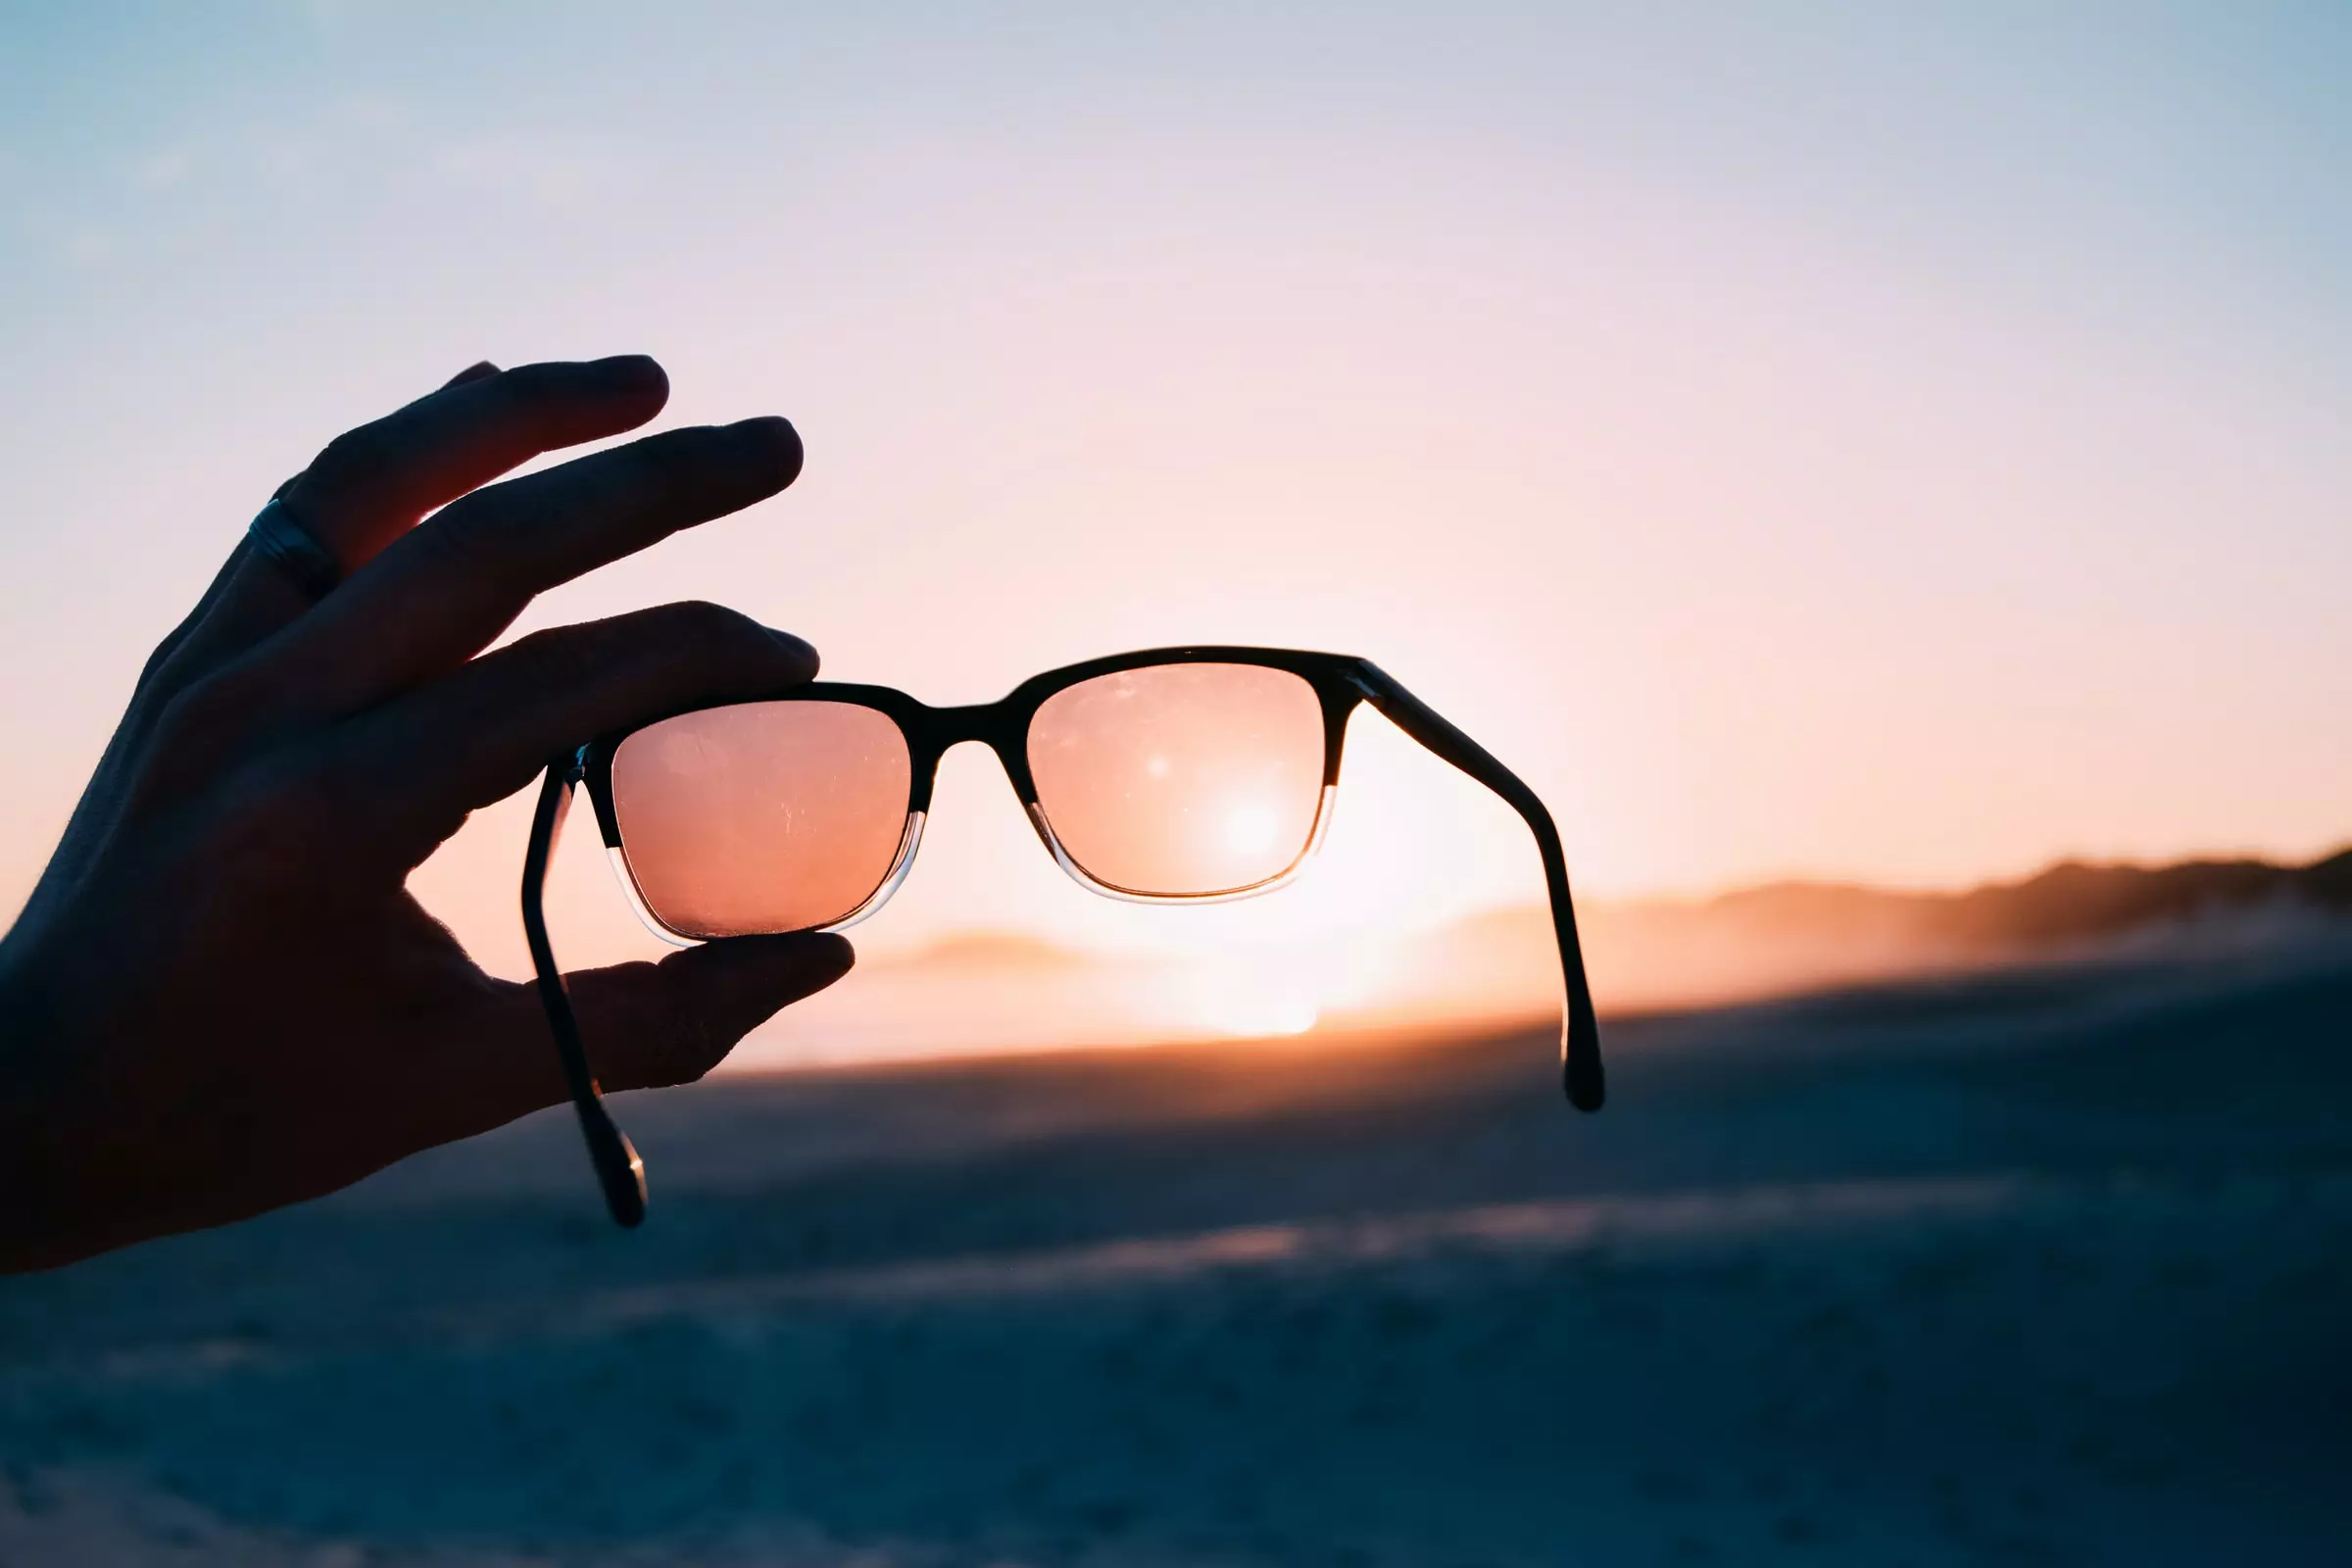 Обычные солнцезащитные очки с защитой от ультрафиолета не подходят для наблюдения затмения Солнца